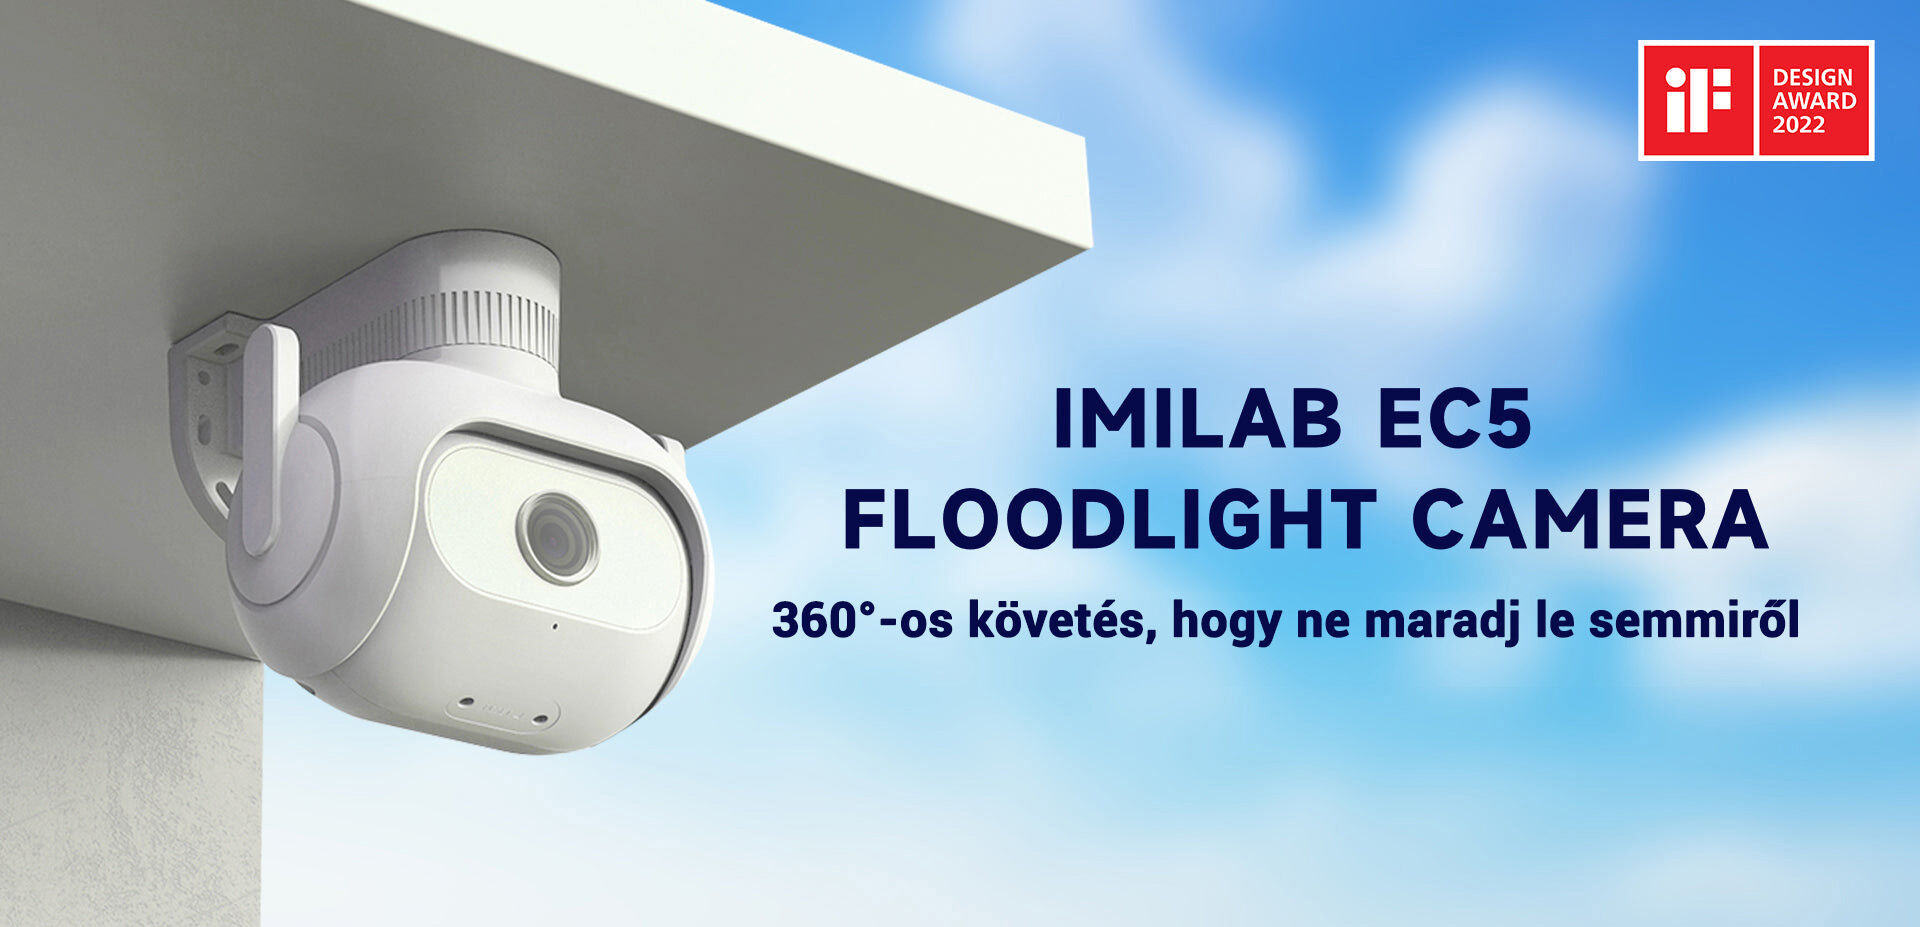 Imilab EC5 Floodlight Camera kültéri WiFi kamera - CMSXJ55A